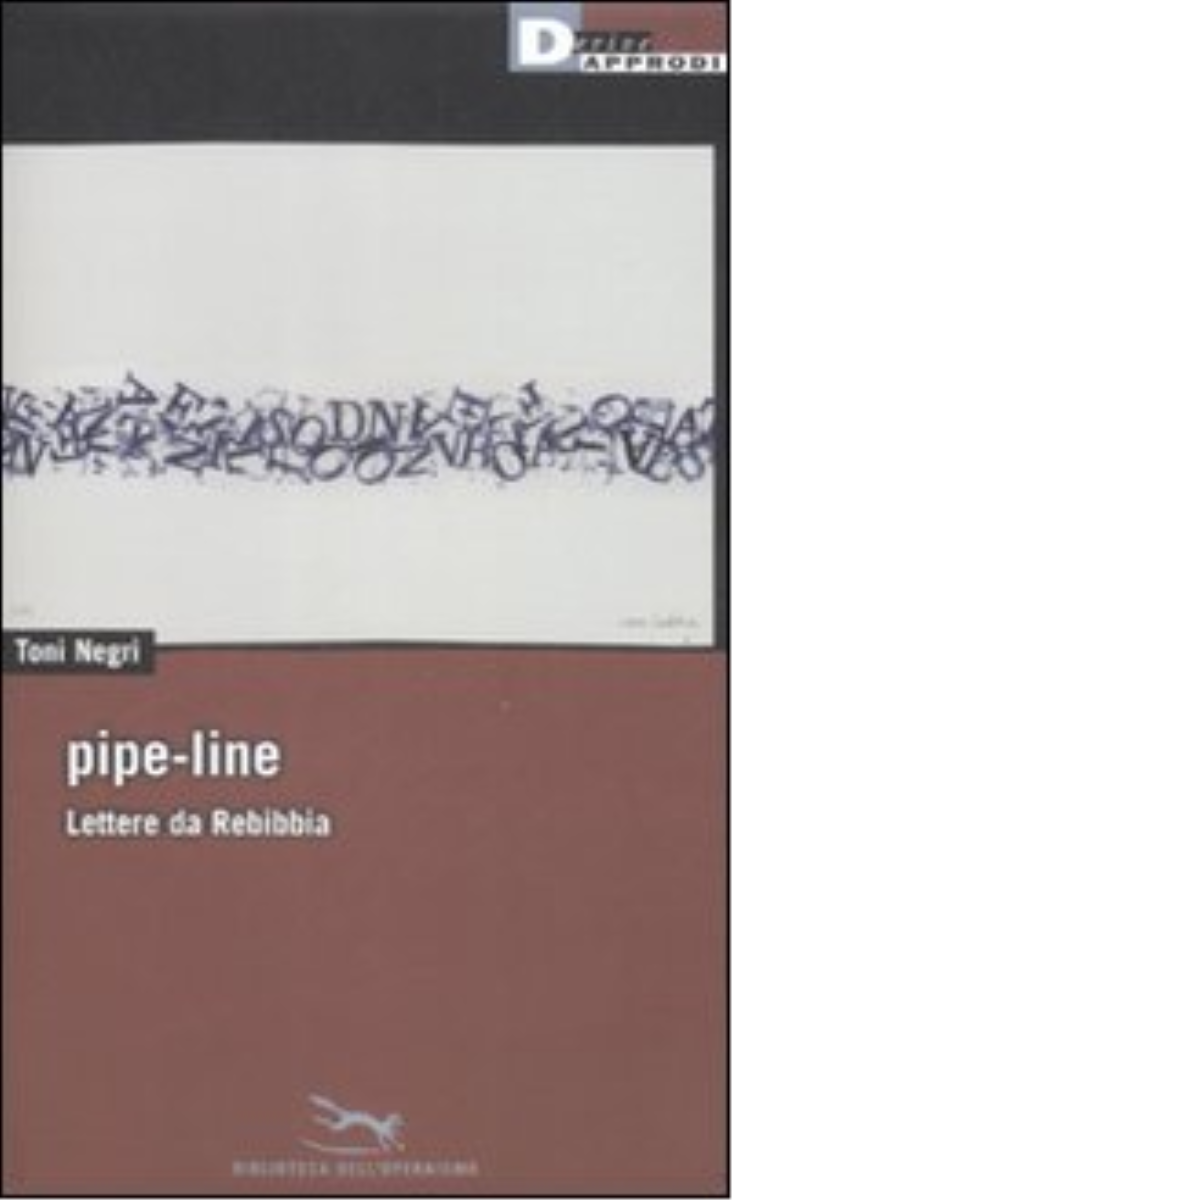 PIPE-LINE. LETTERE DA REBIBBIA di TONI NEGRI - DeriveApprodi editore, 2009 libro usato